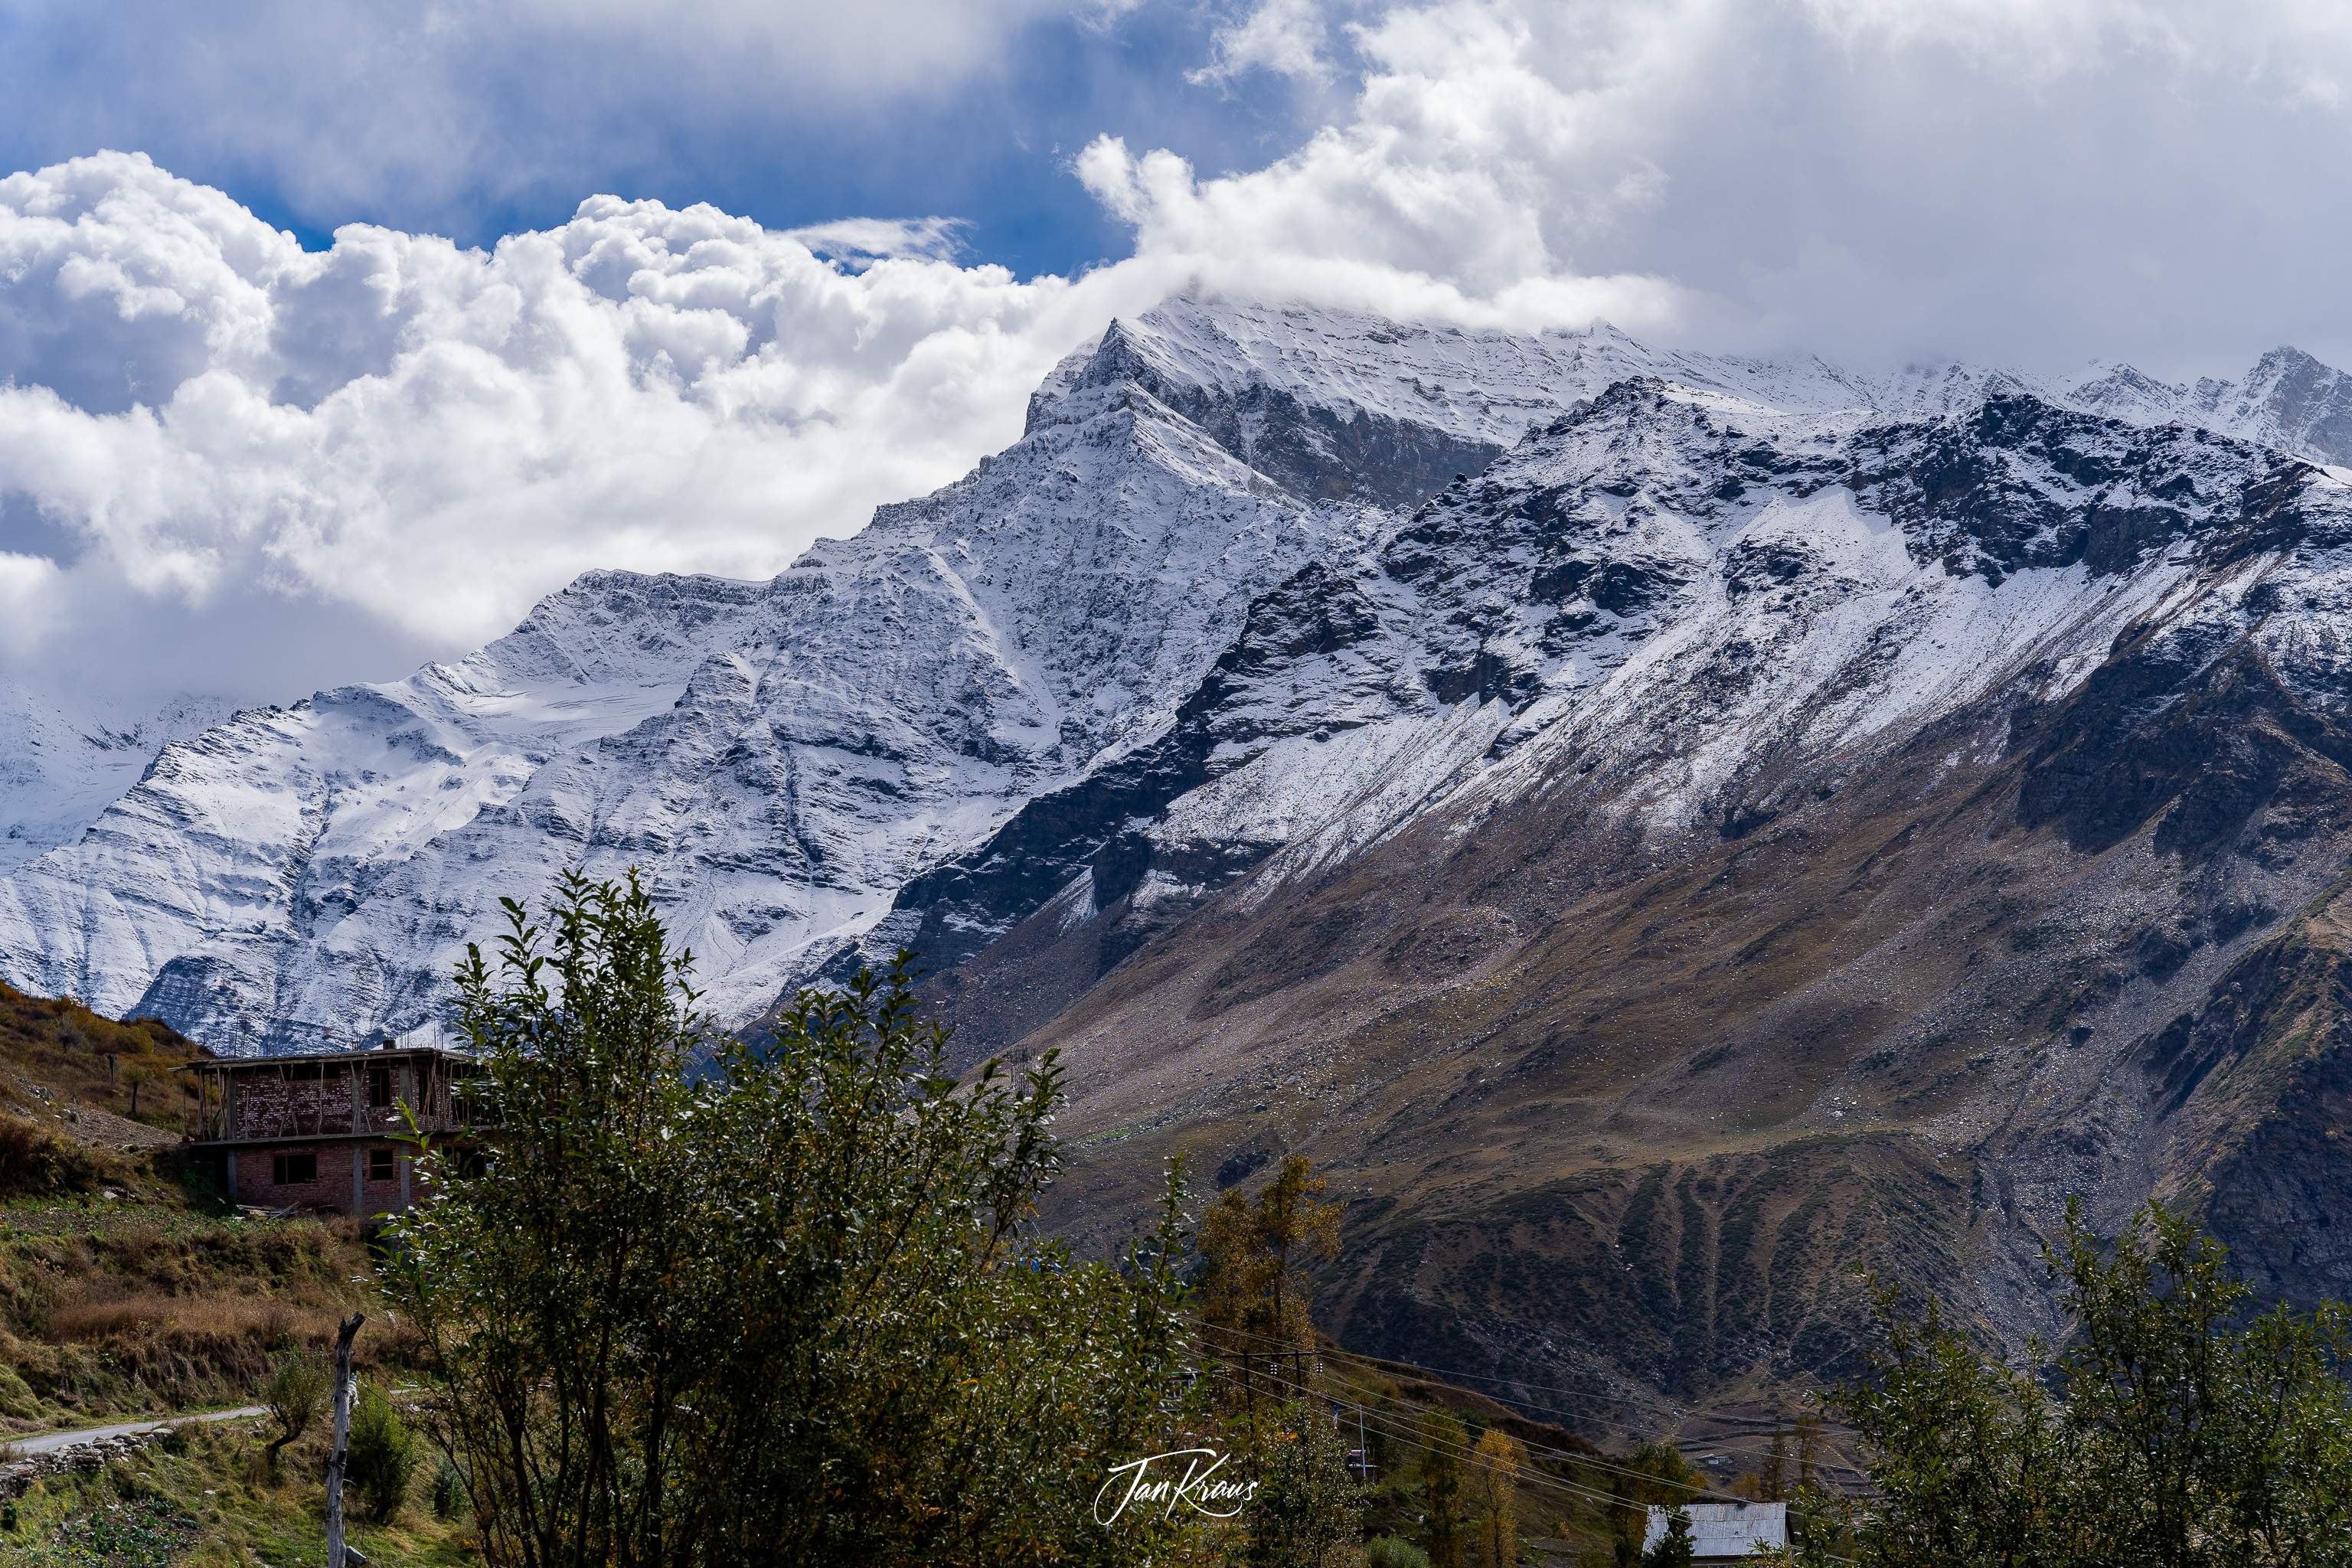 Snow covered peaks seen in Kullu Valley, India